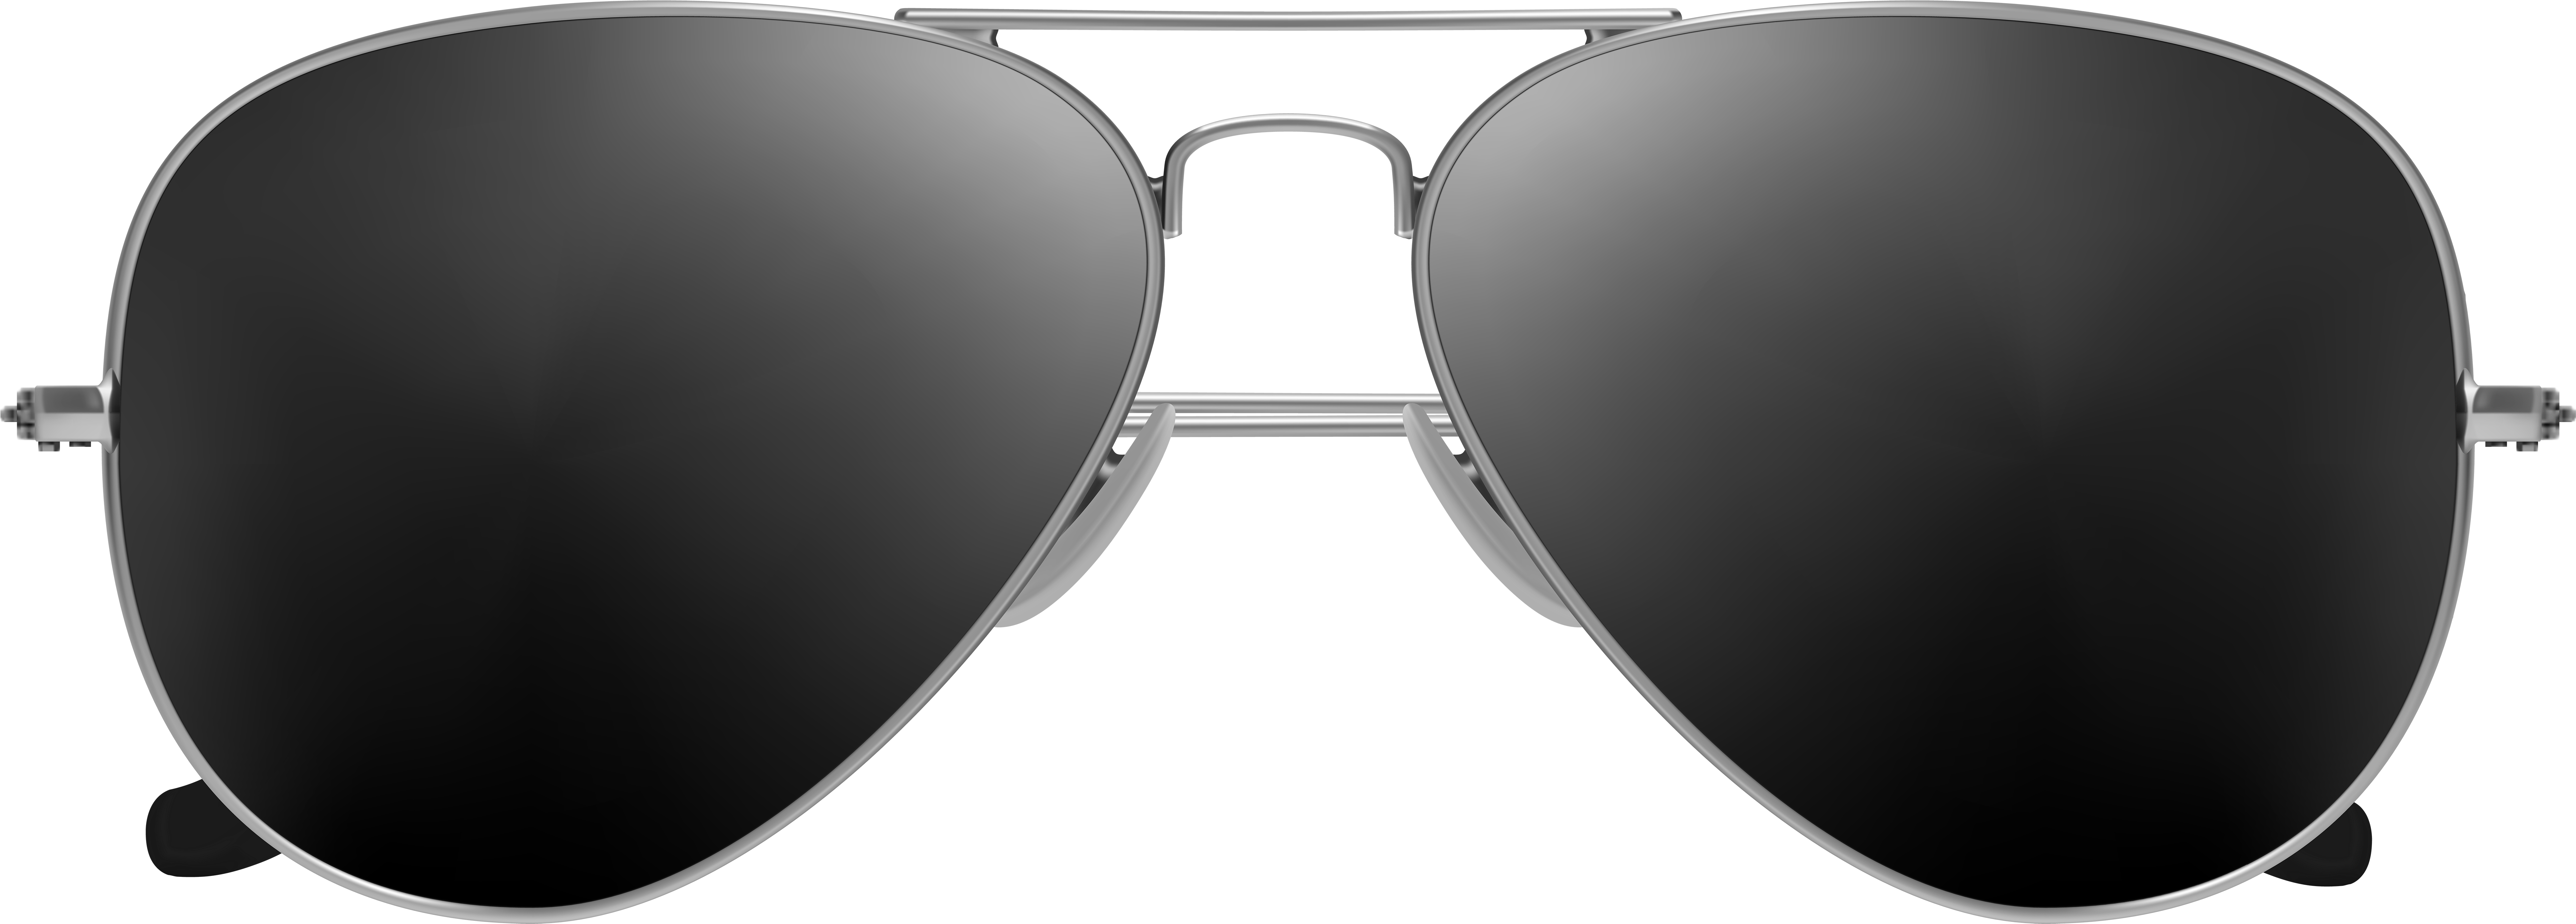 √1000以上 aviator ray ban glasses png 292844 - Blogjpmbahetkt6